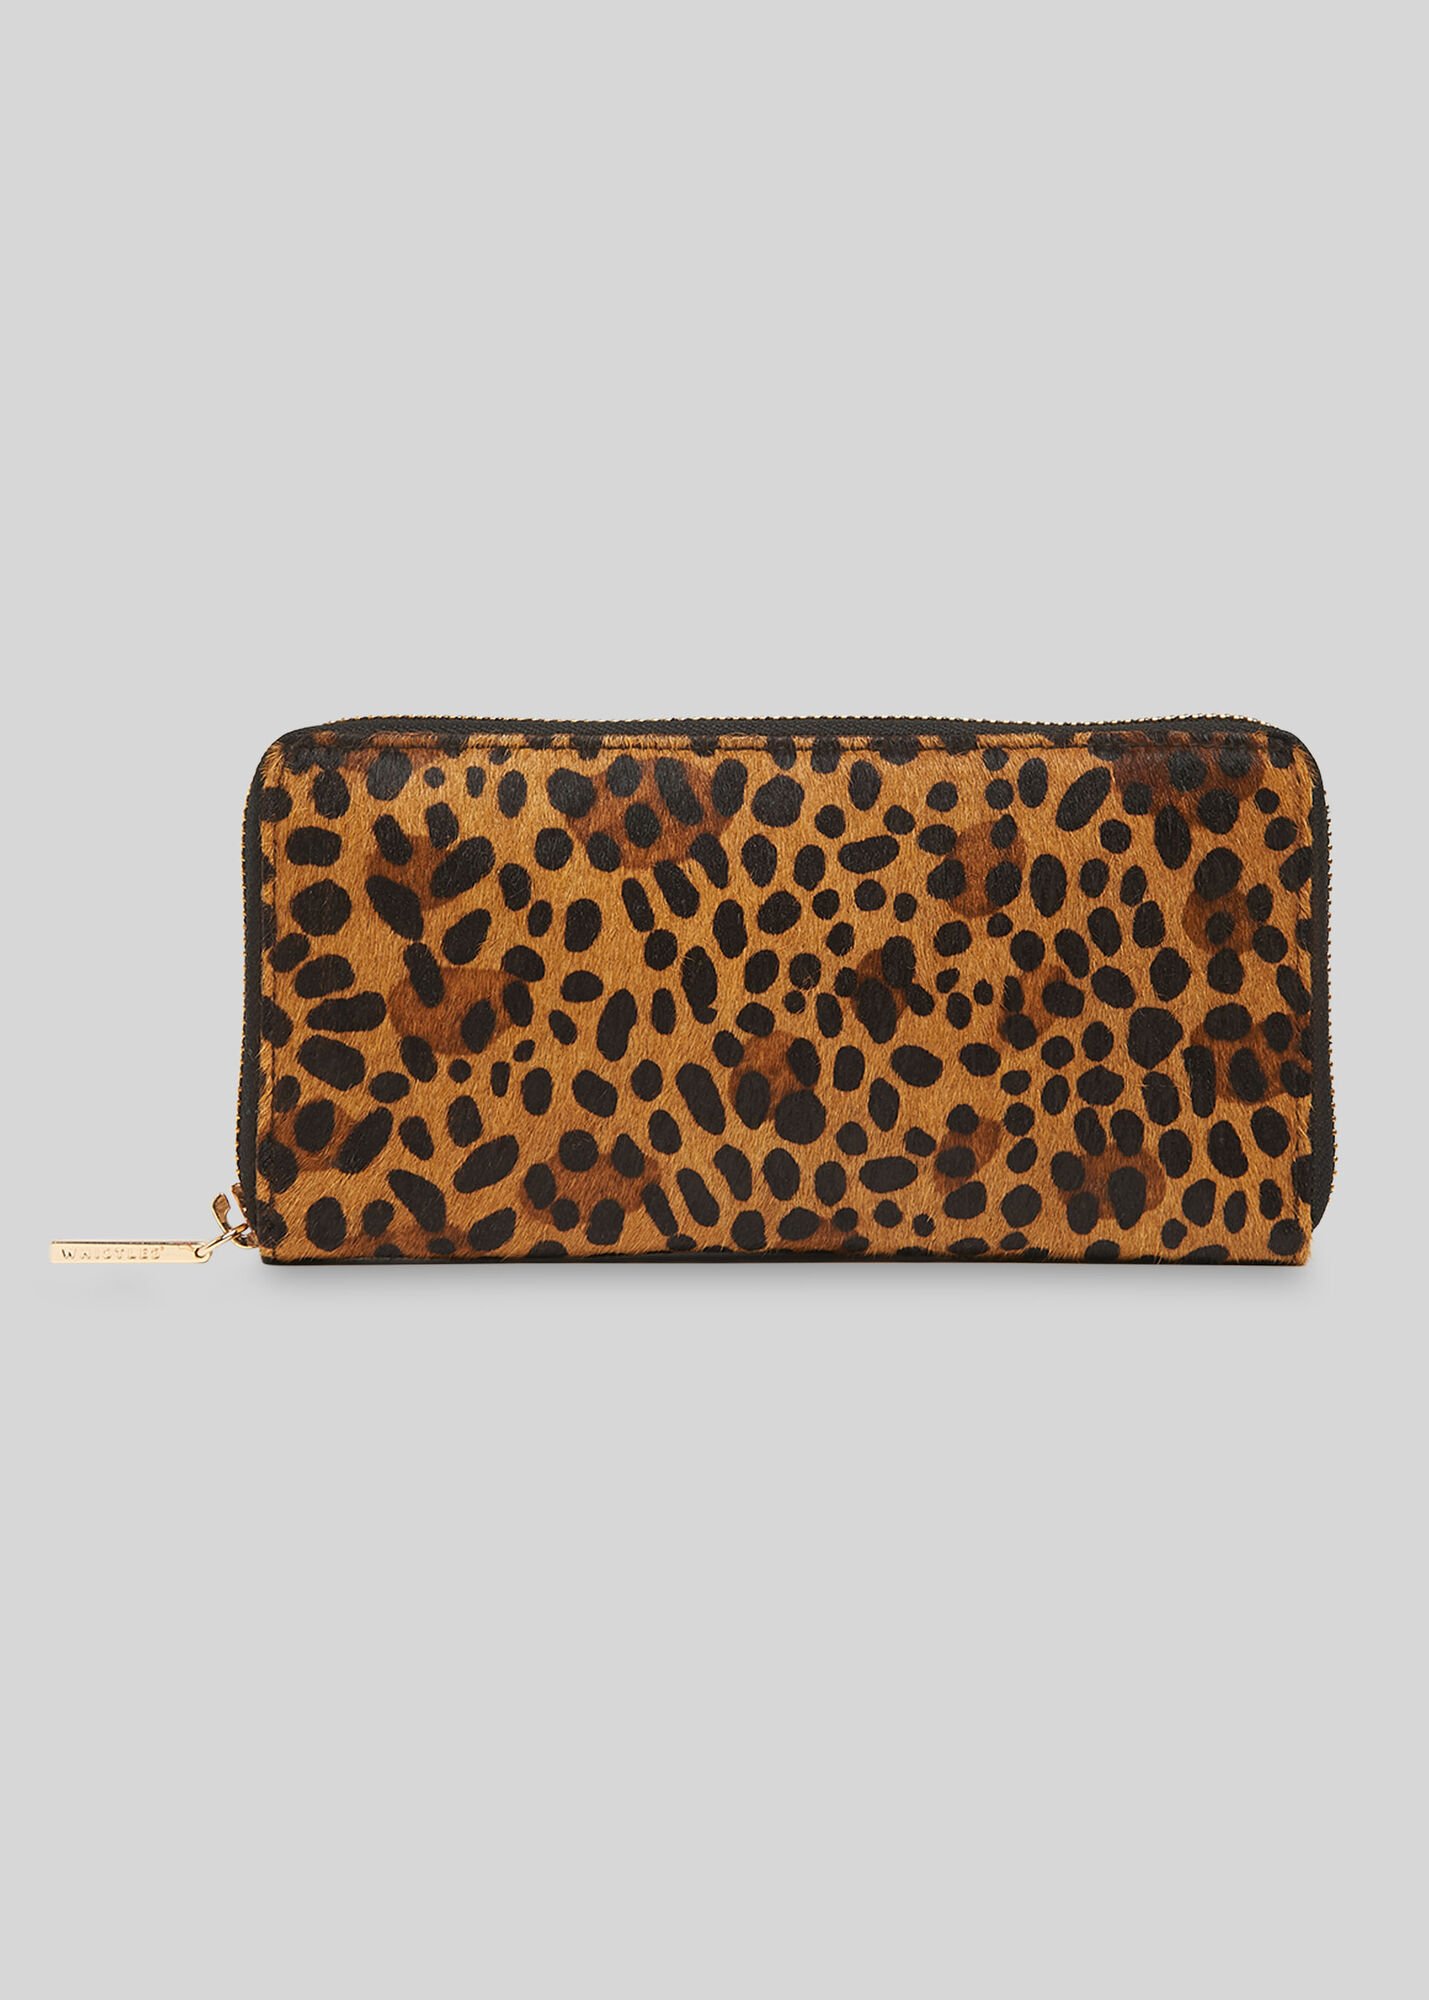 Leopard Print Reigate Leopard Wallet | WHISTLES